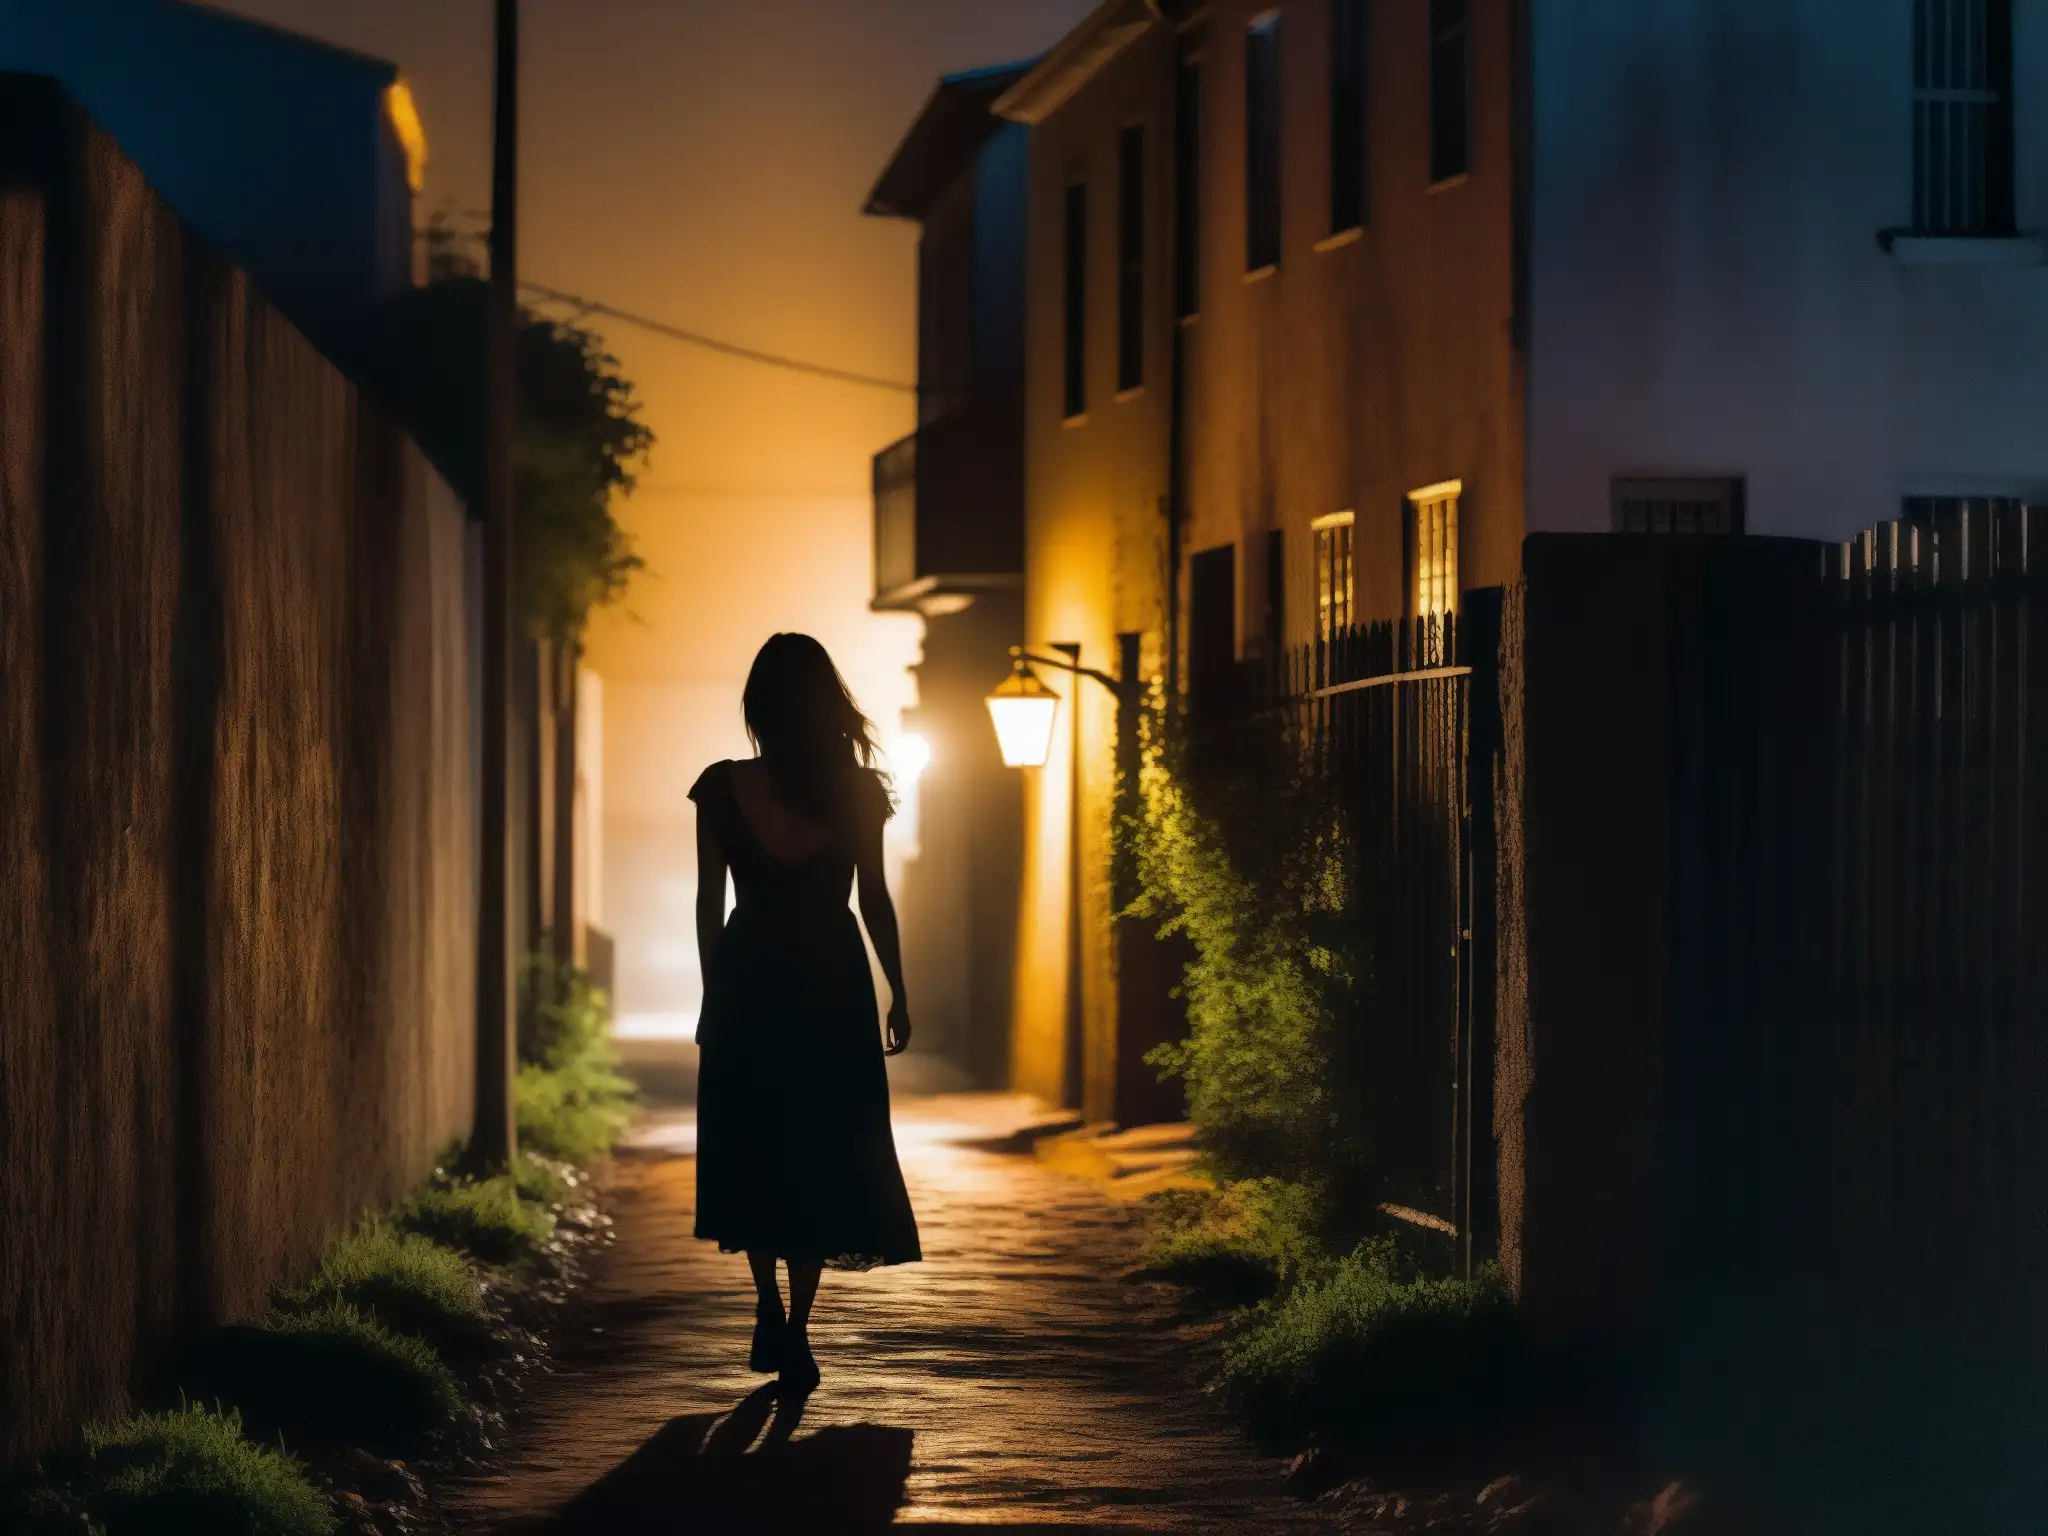 La misteriosa silueta de la Llorona en un callejón oscuro evoca la atmósfera inquietante de los mitos urbanos impacto salud mental